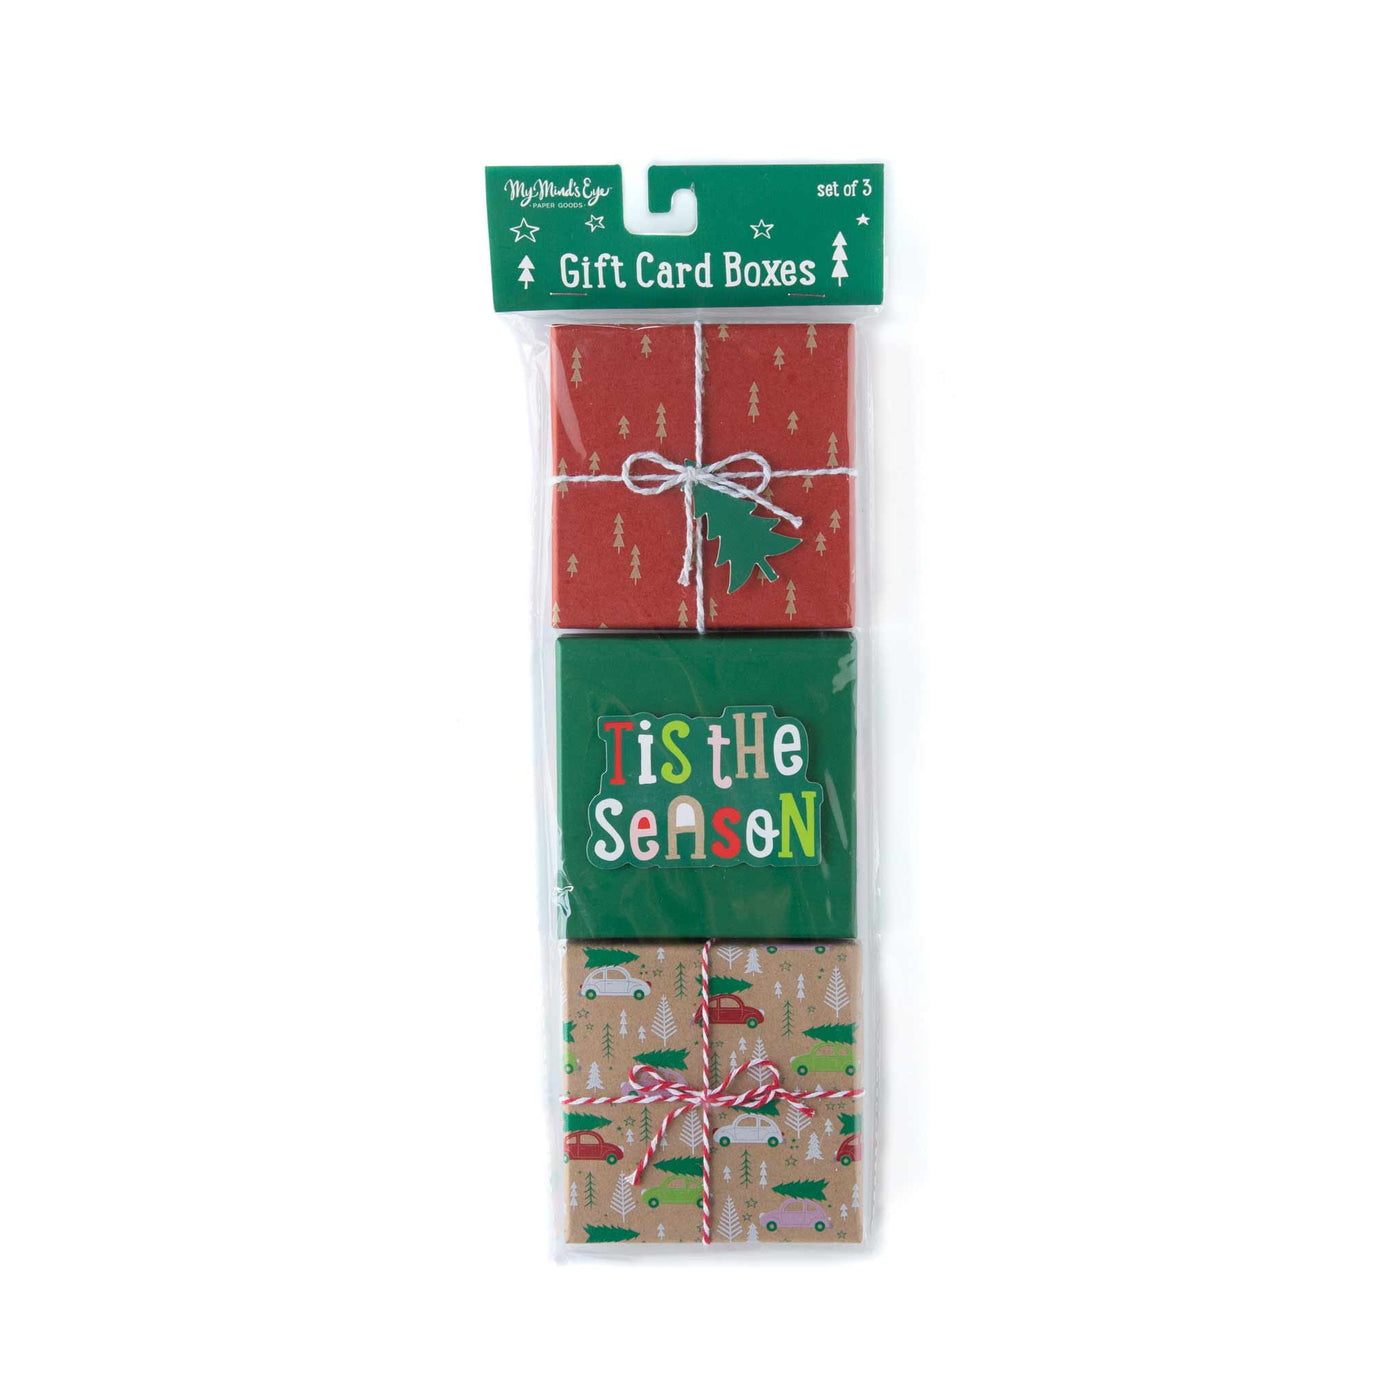 PLGC01 - Tis the Season Gift Card Boxes